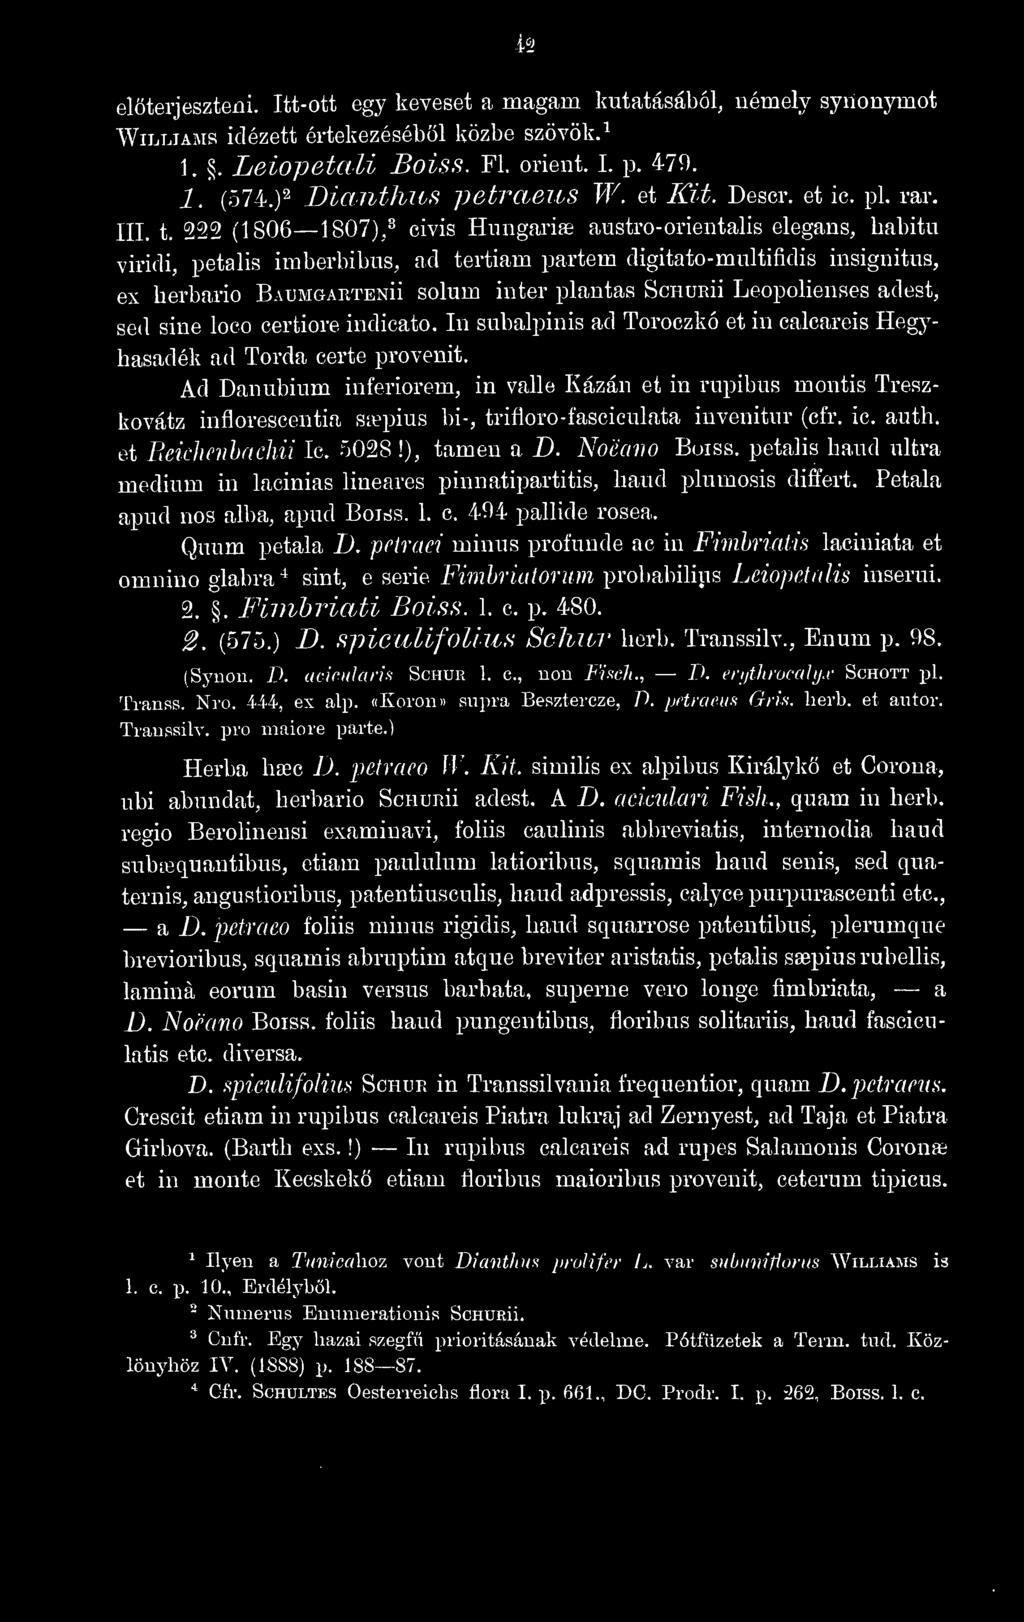 222 (1806 1807),^ cívis Hmigariae austro- orientális elegáns, babitu viridi, petalis imberbibus, ad tertiam partem digitato-multifidis insignitus, ex herbario Baumgartenü solum inter plantas Schurü